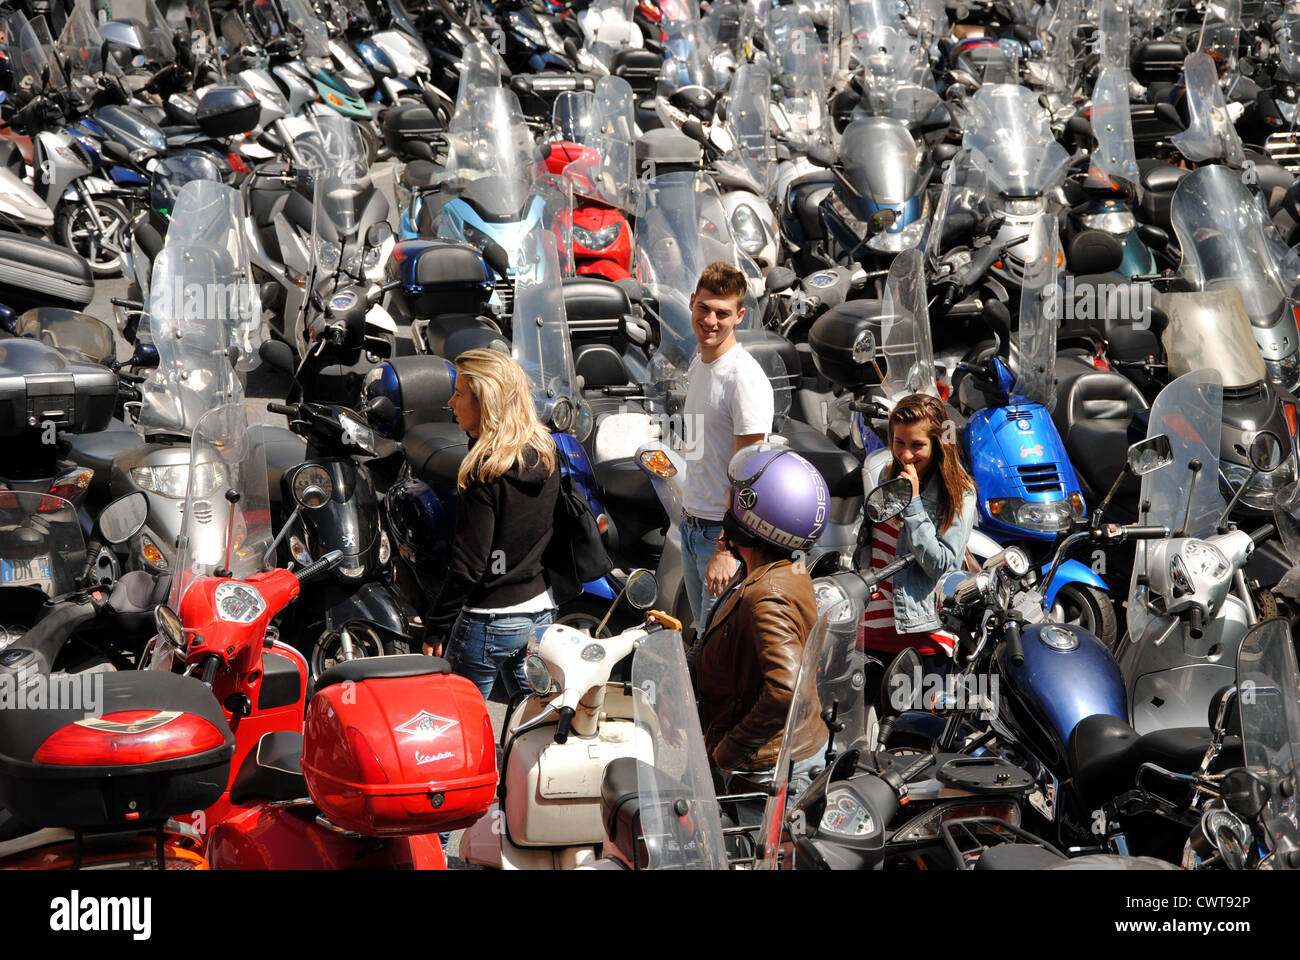 Junge Menschen unter einem Meer von Motorrädern, Genua, Italien Stockfoto